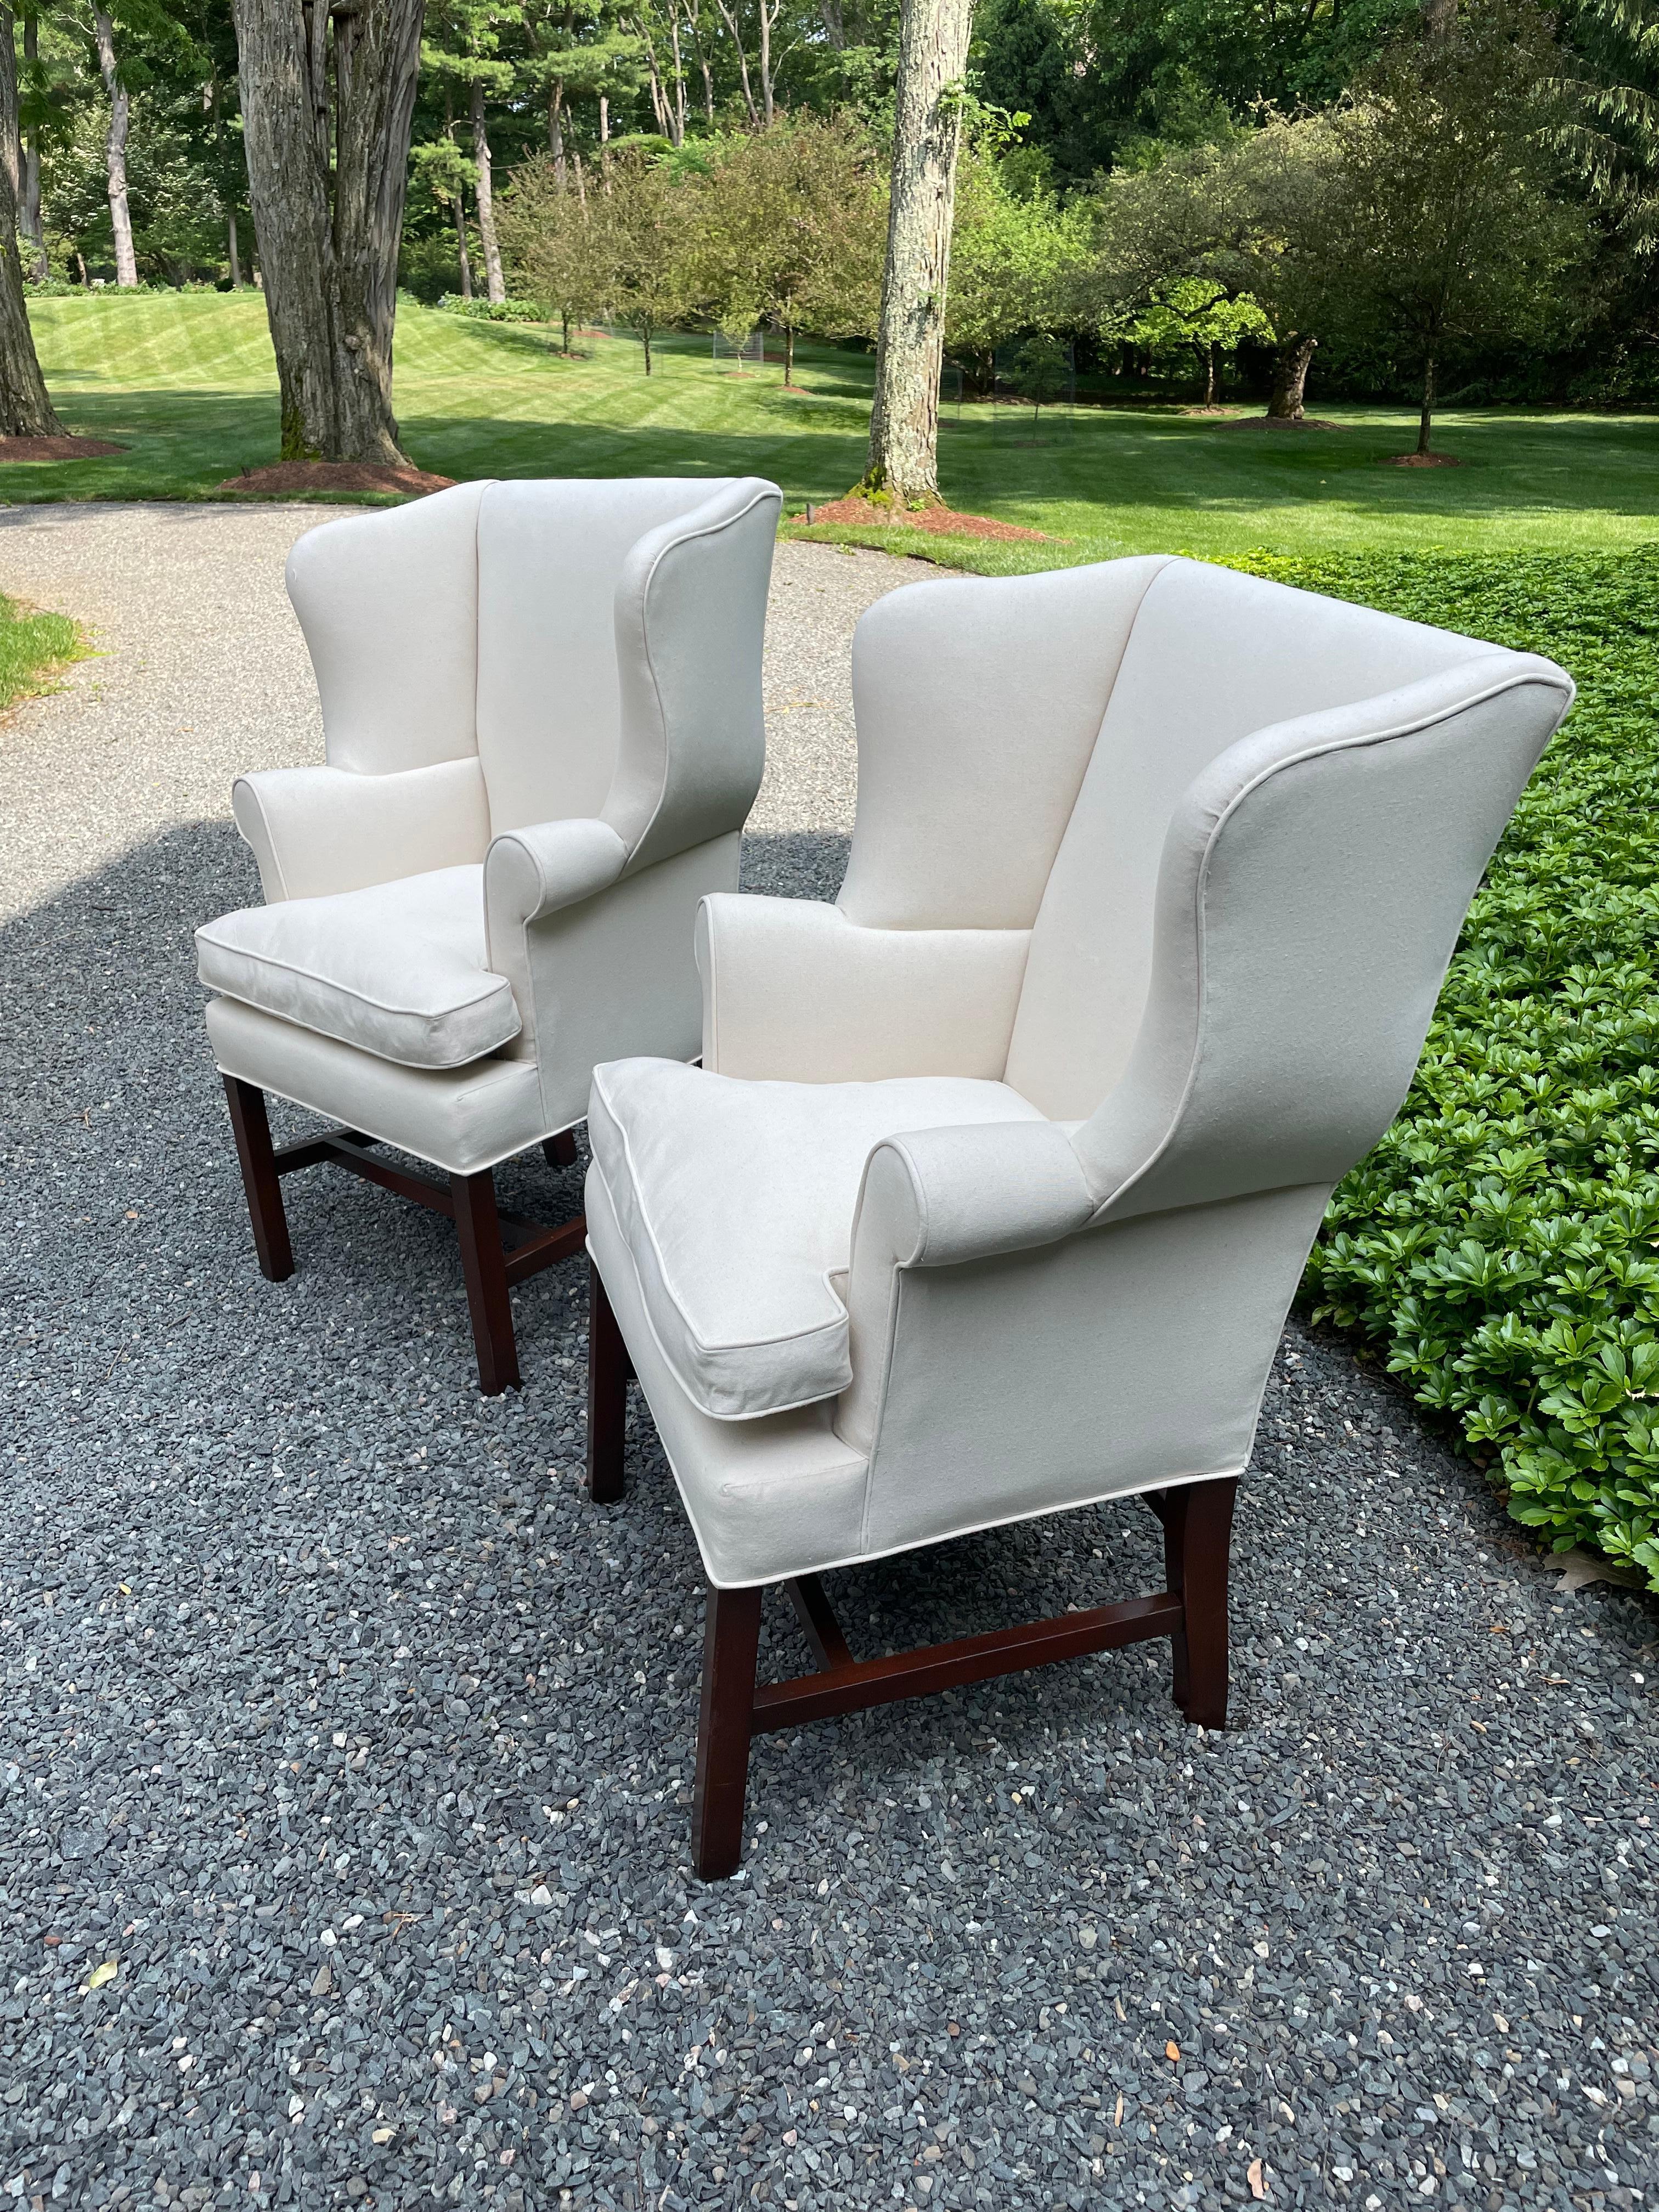 Elegante paire de chaises vintage à dossier à oreilles de style géorgien, de taille plus petite que beaucoup de chaises plus grandes.  Les chaises sont nouvellement tapissées d'un canard en coton blanc actualisé avec des coussins en duvet.  Pieds et